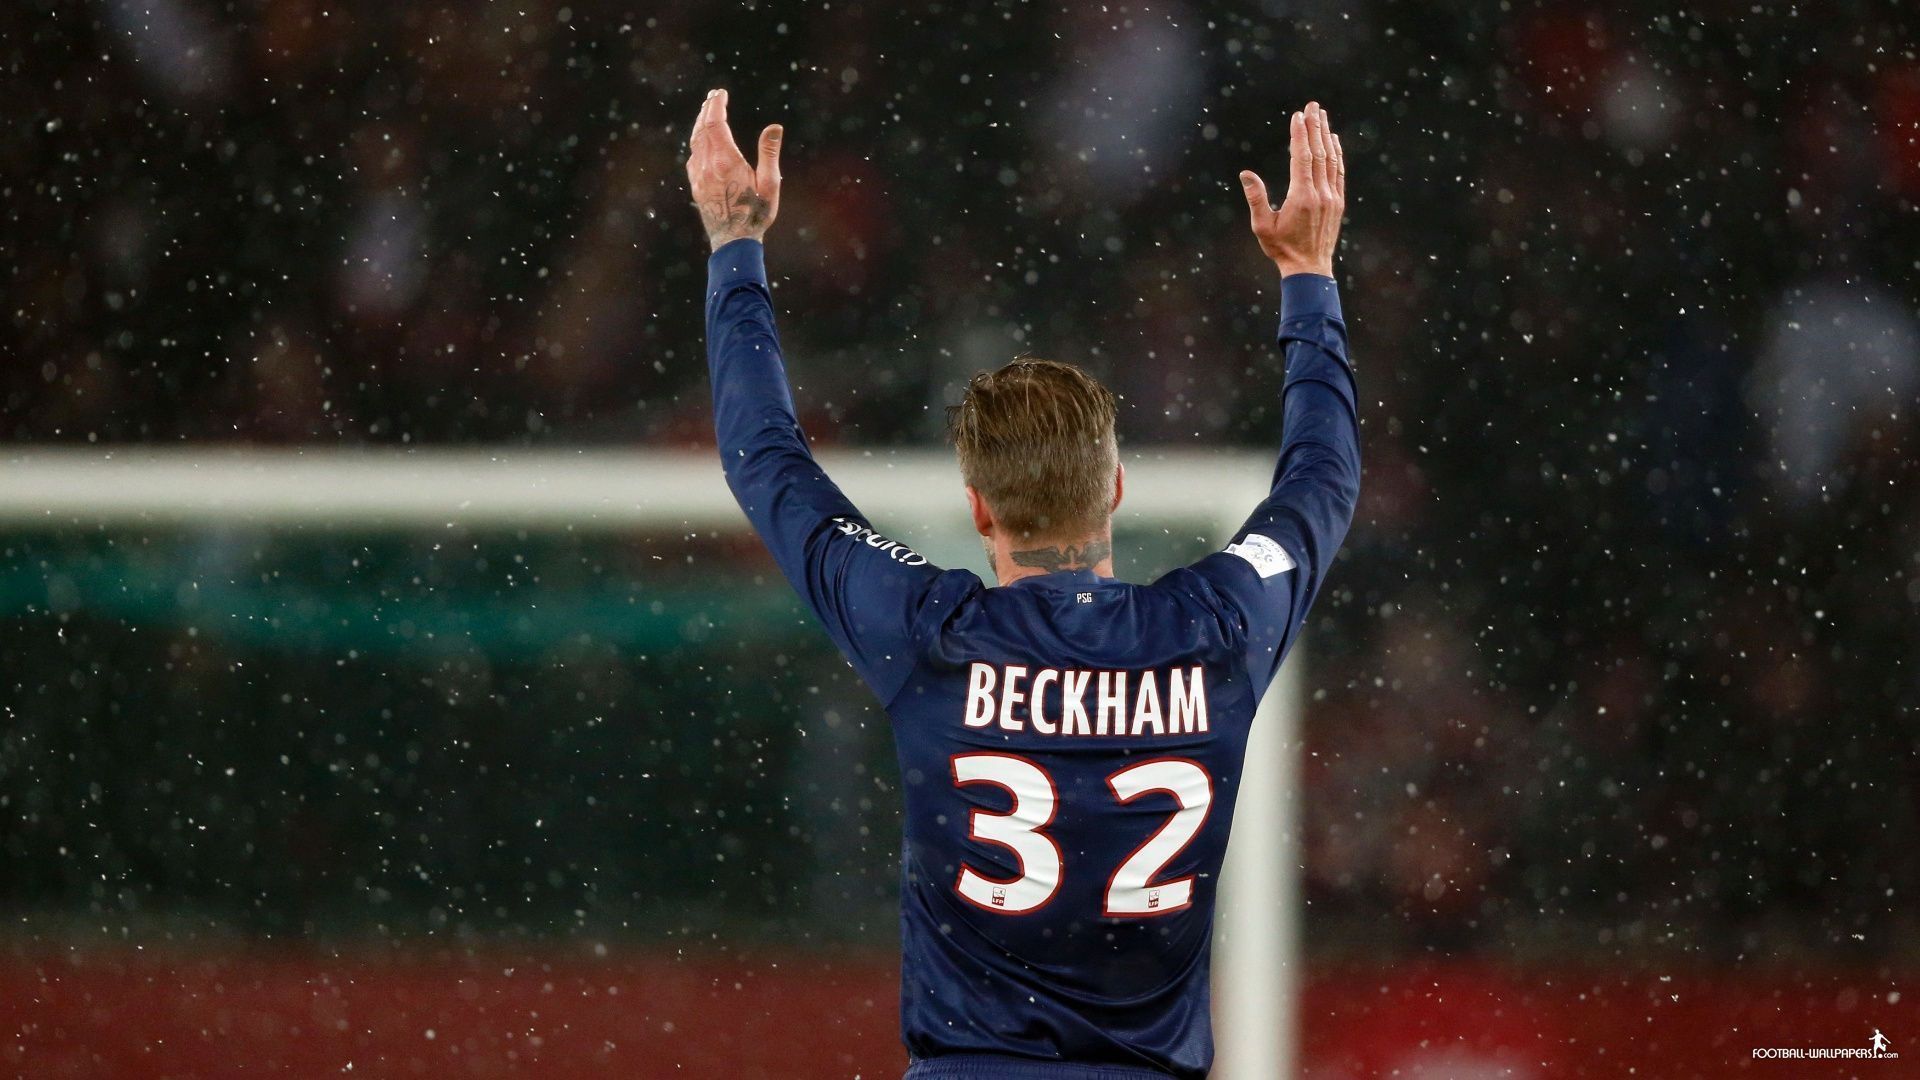 David Beckham Hd 1080p | David Beckham Football Wallpapers